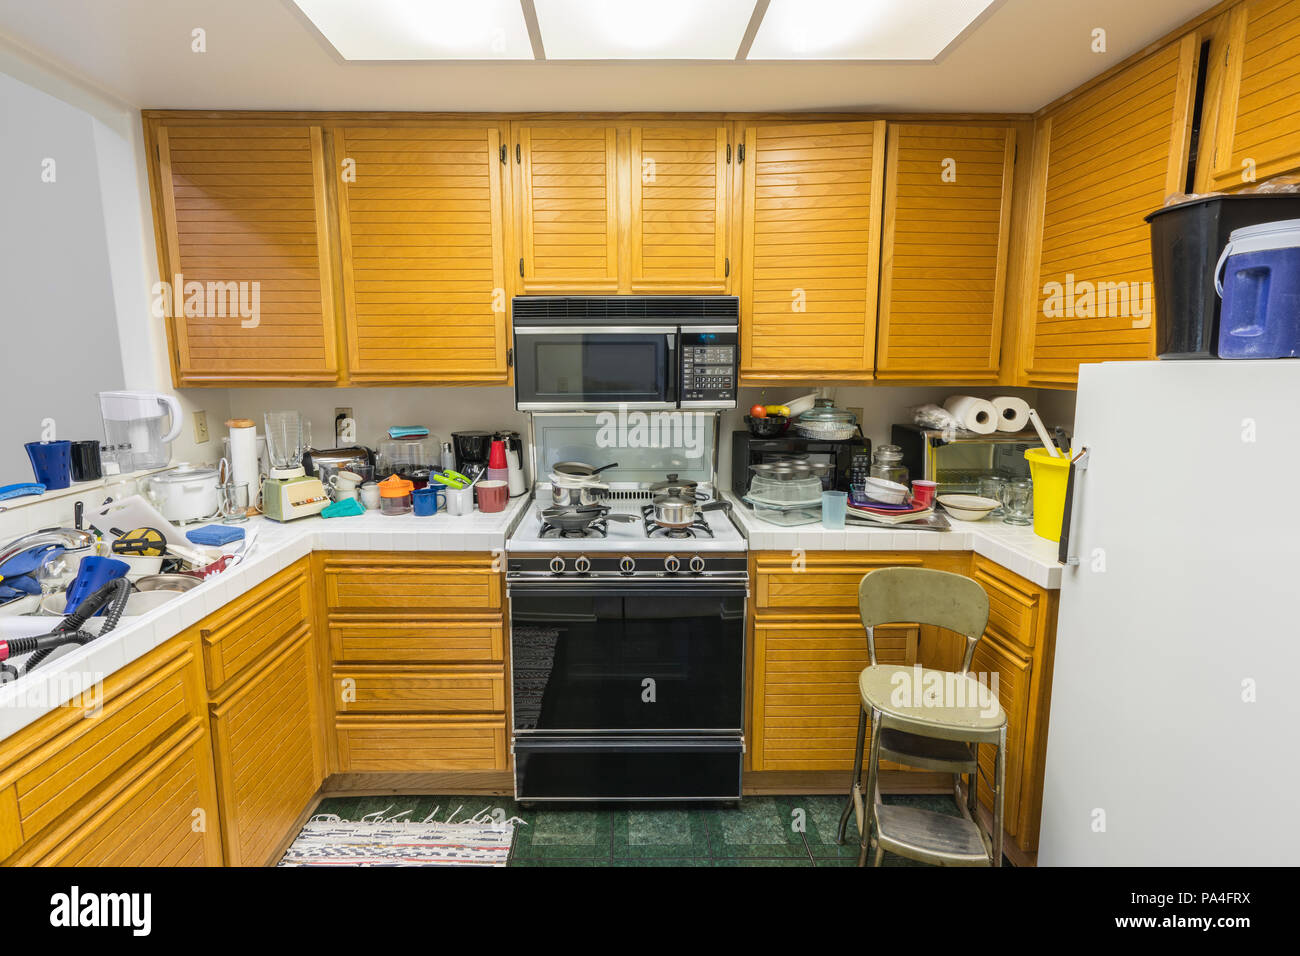 Confuso il vecchio appartamento cucina con armadi in legno di quercia, tile countertops, fornello a gas a pavimento verde e pile di piatti. Foto Stock